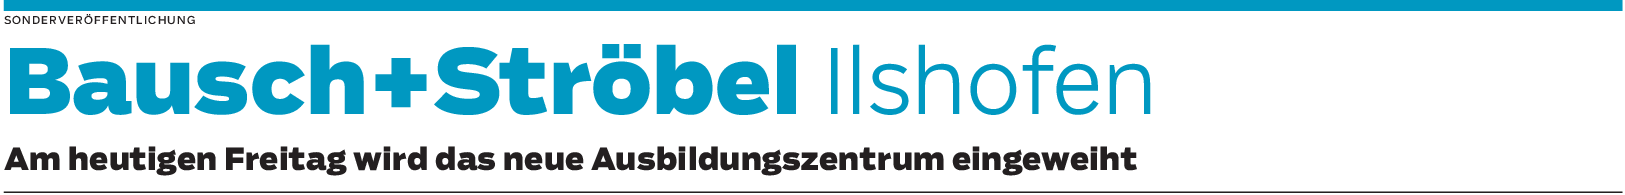 Bausch+Ströbel Ilshofen: Viel Platz für die freie Entfaltung